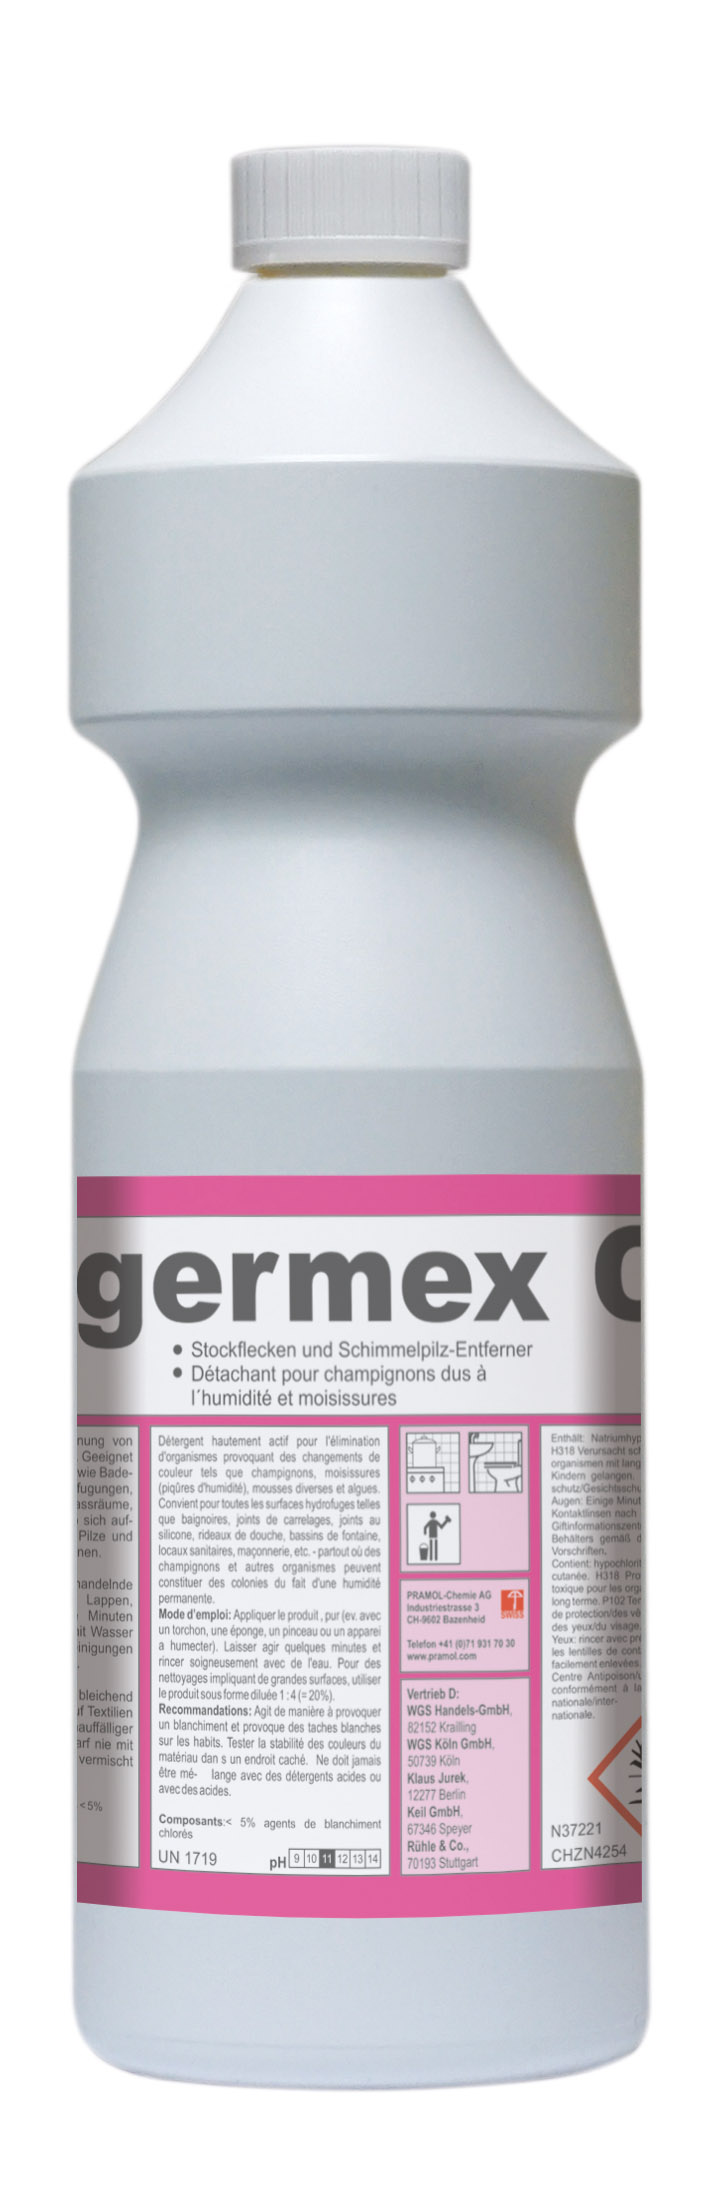 Pramol germex C Stockflecken- und, Schimmelpilzentferner, chlorhaltig, 750 ml